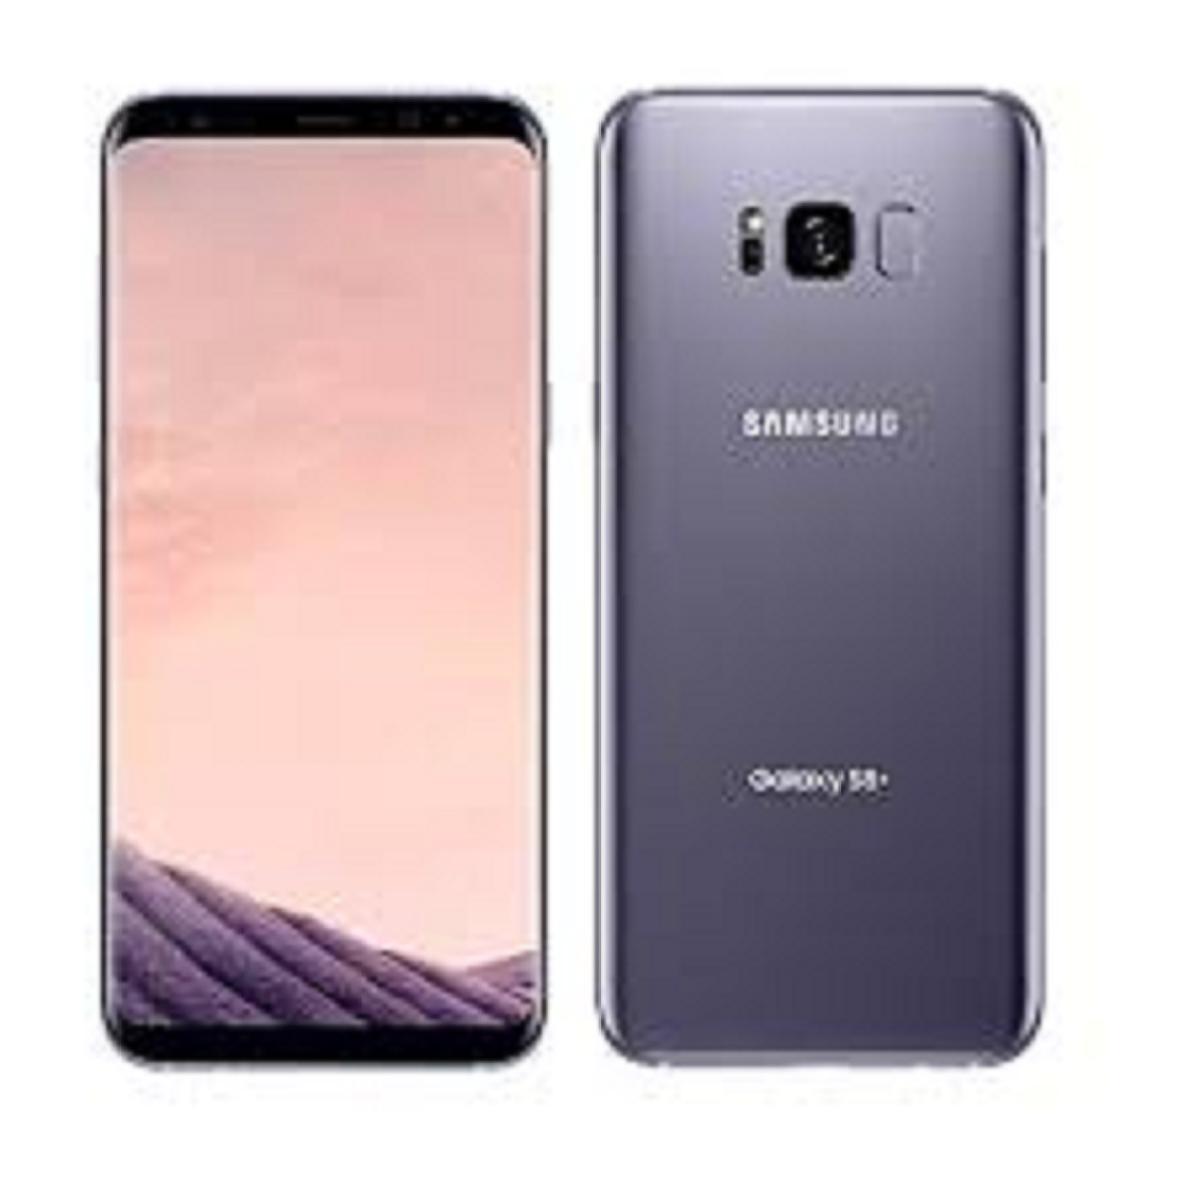 SALE TO SỐC  Điện Thoại Samsung Galaxy S8 Plus ram 4G bộ nhớ 64G / Samsung S8 Plus Loại - Màn hình Vô cực Màn hình: Super AMOLED, 6.2", Quad HD+ (2K+)Màn hình 6.2 inch 2K AMOLED (2560 x 1440 pixel) S8 PLUS màn ám, lưu ảnh nặng đủ màu